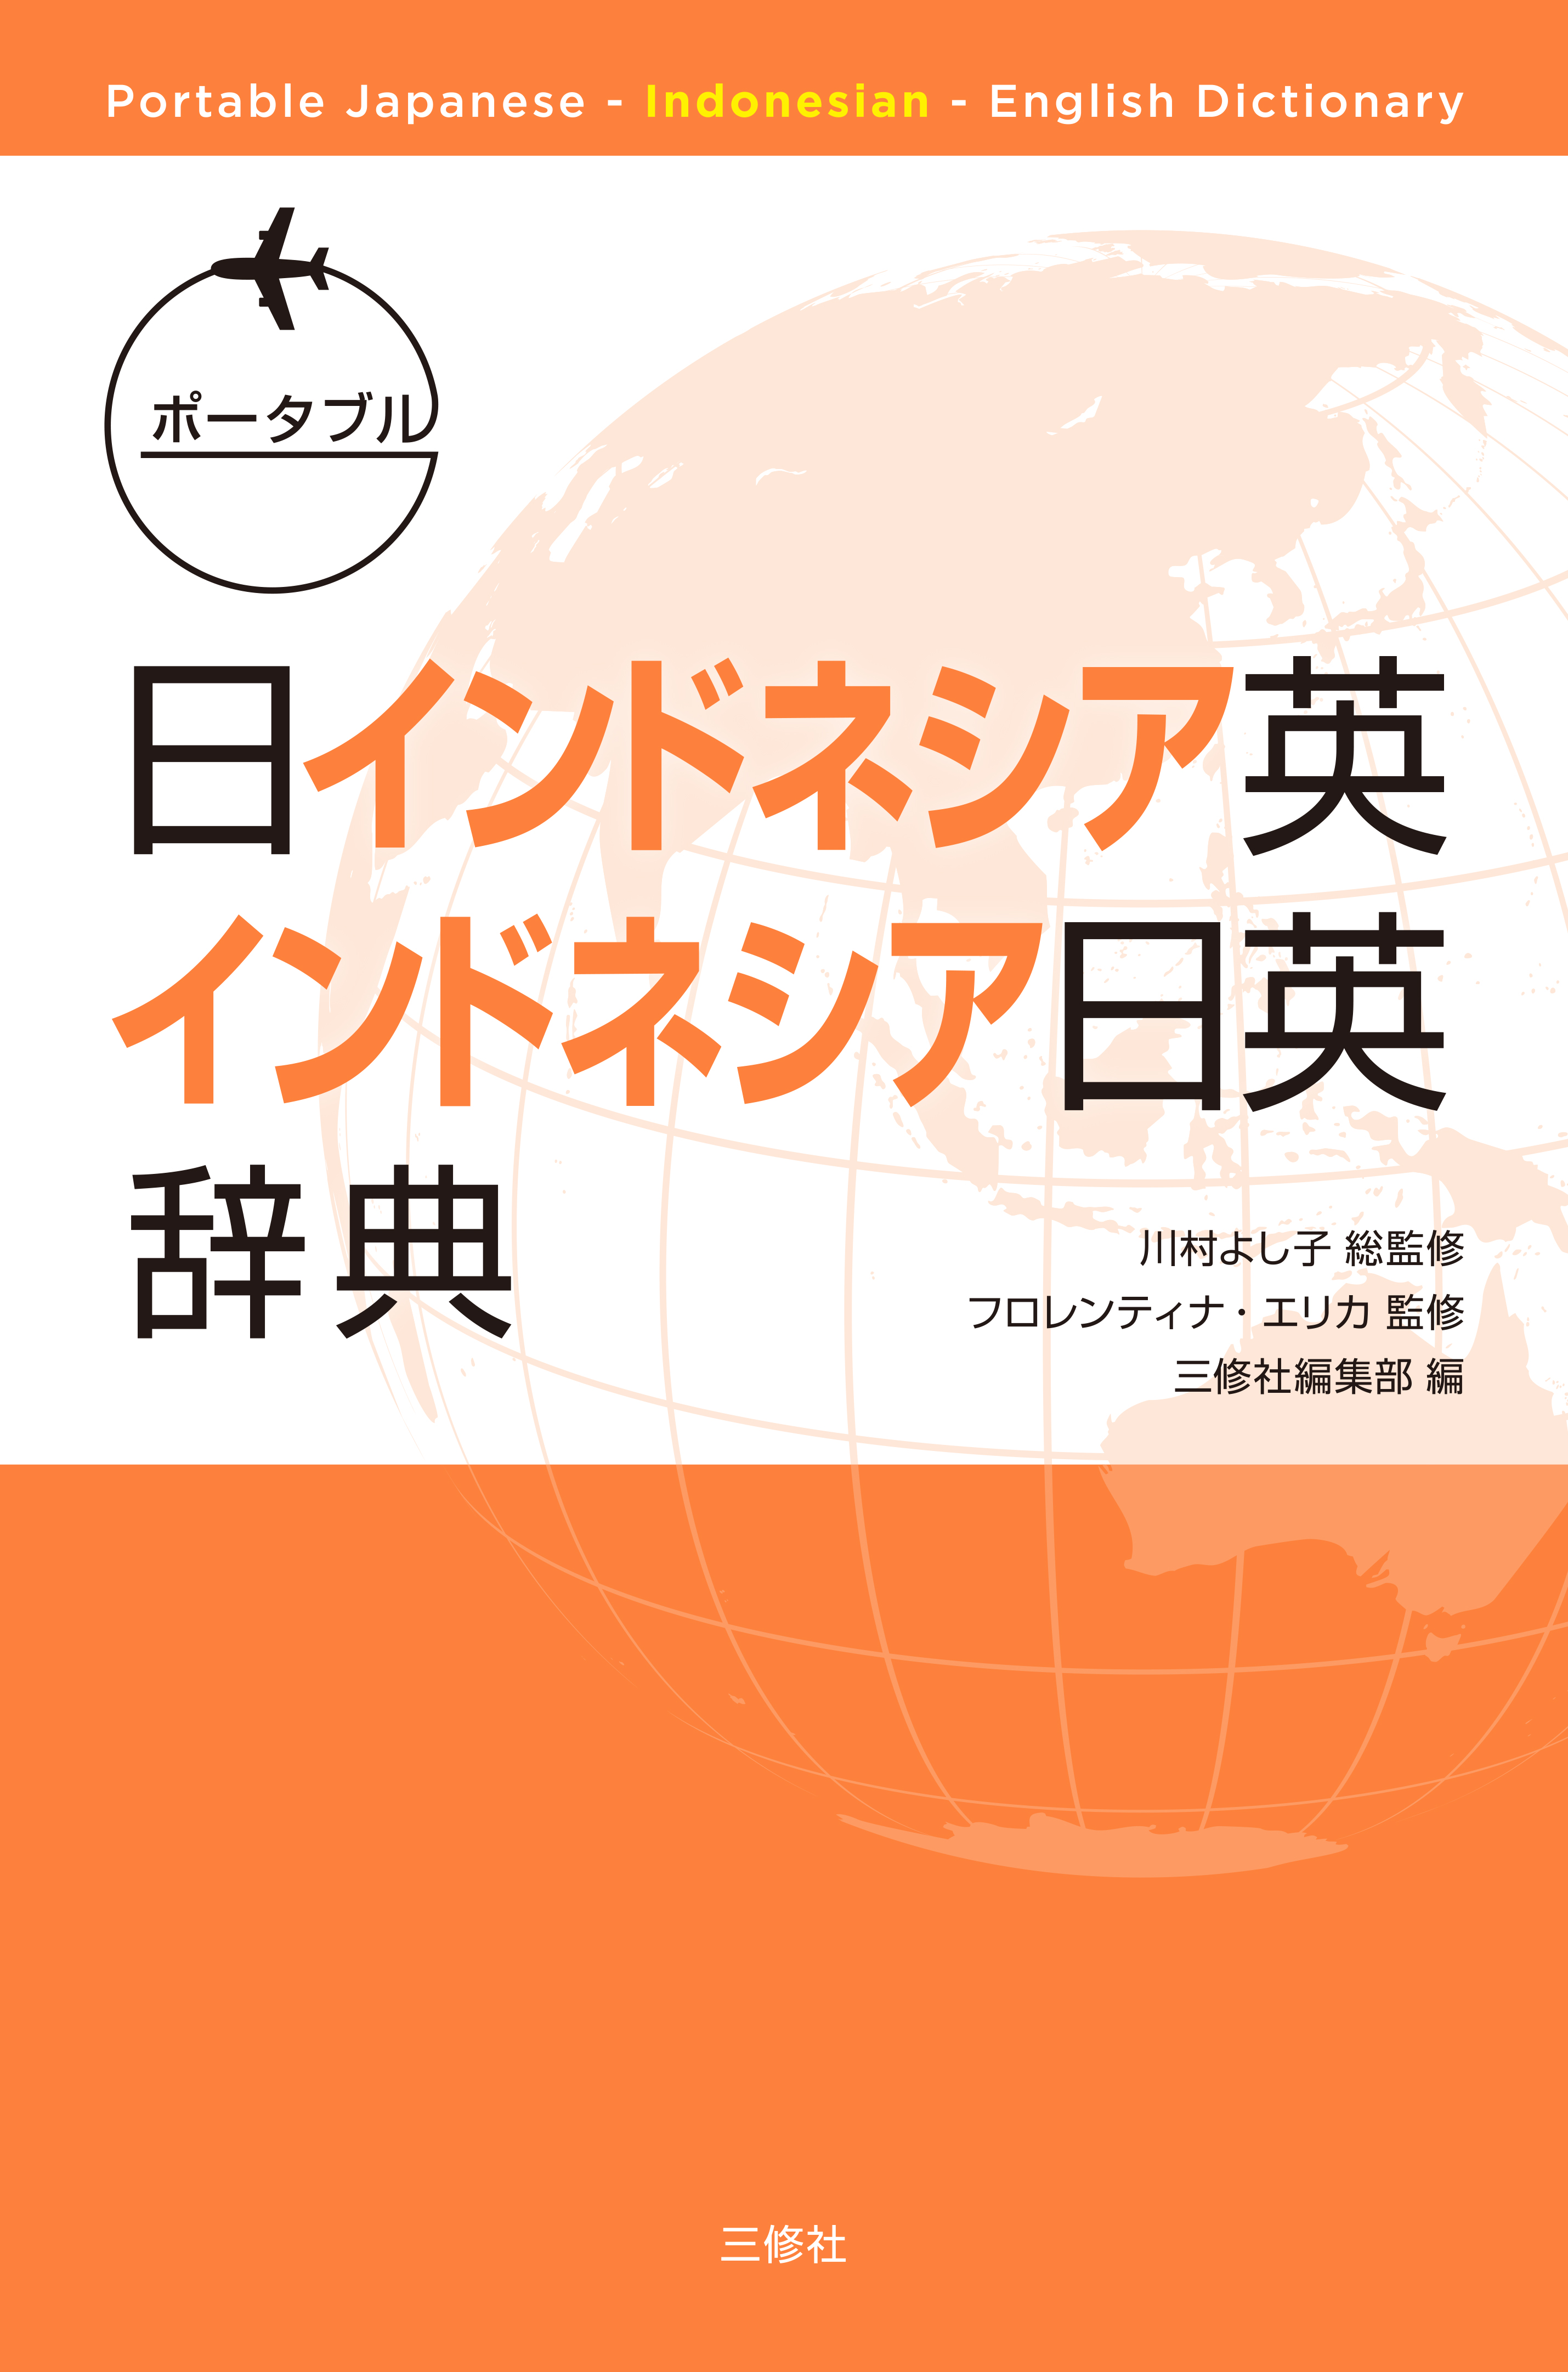 ポータブル日インドネシア英・インドネシア日英辞典 Portable Japanese-Indonesian-English Dictionary